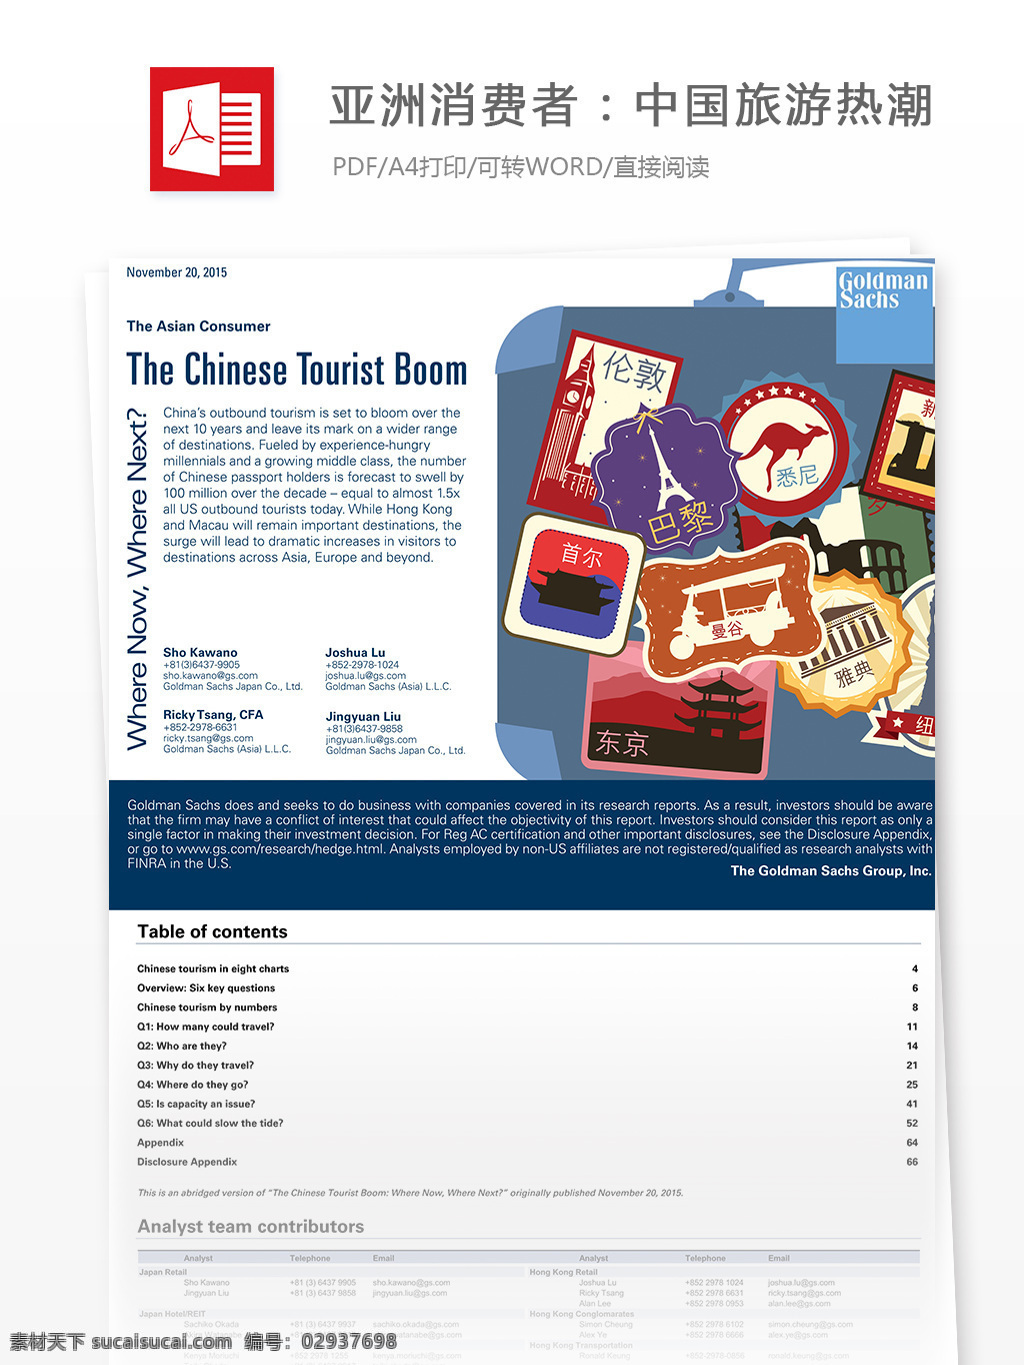 亚洲 消费者 中国旅游 热潮 零售 行业分析报告 行业分析 零售行业 互联网数据 电商行业 电商报告 报告模板 旅游消费 旅游 亚洲消费